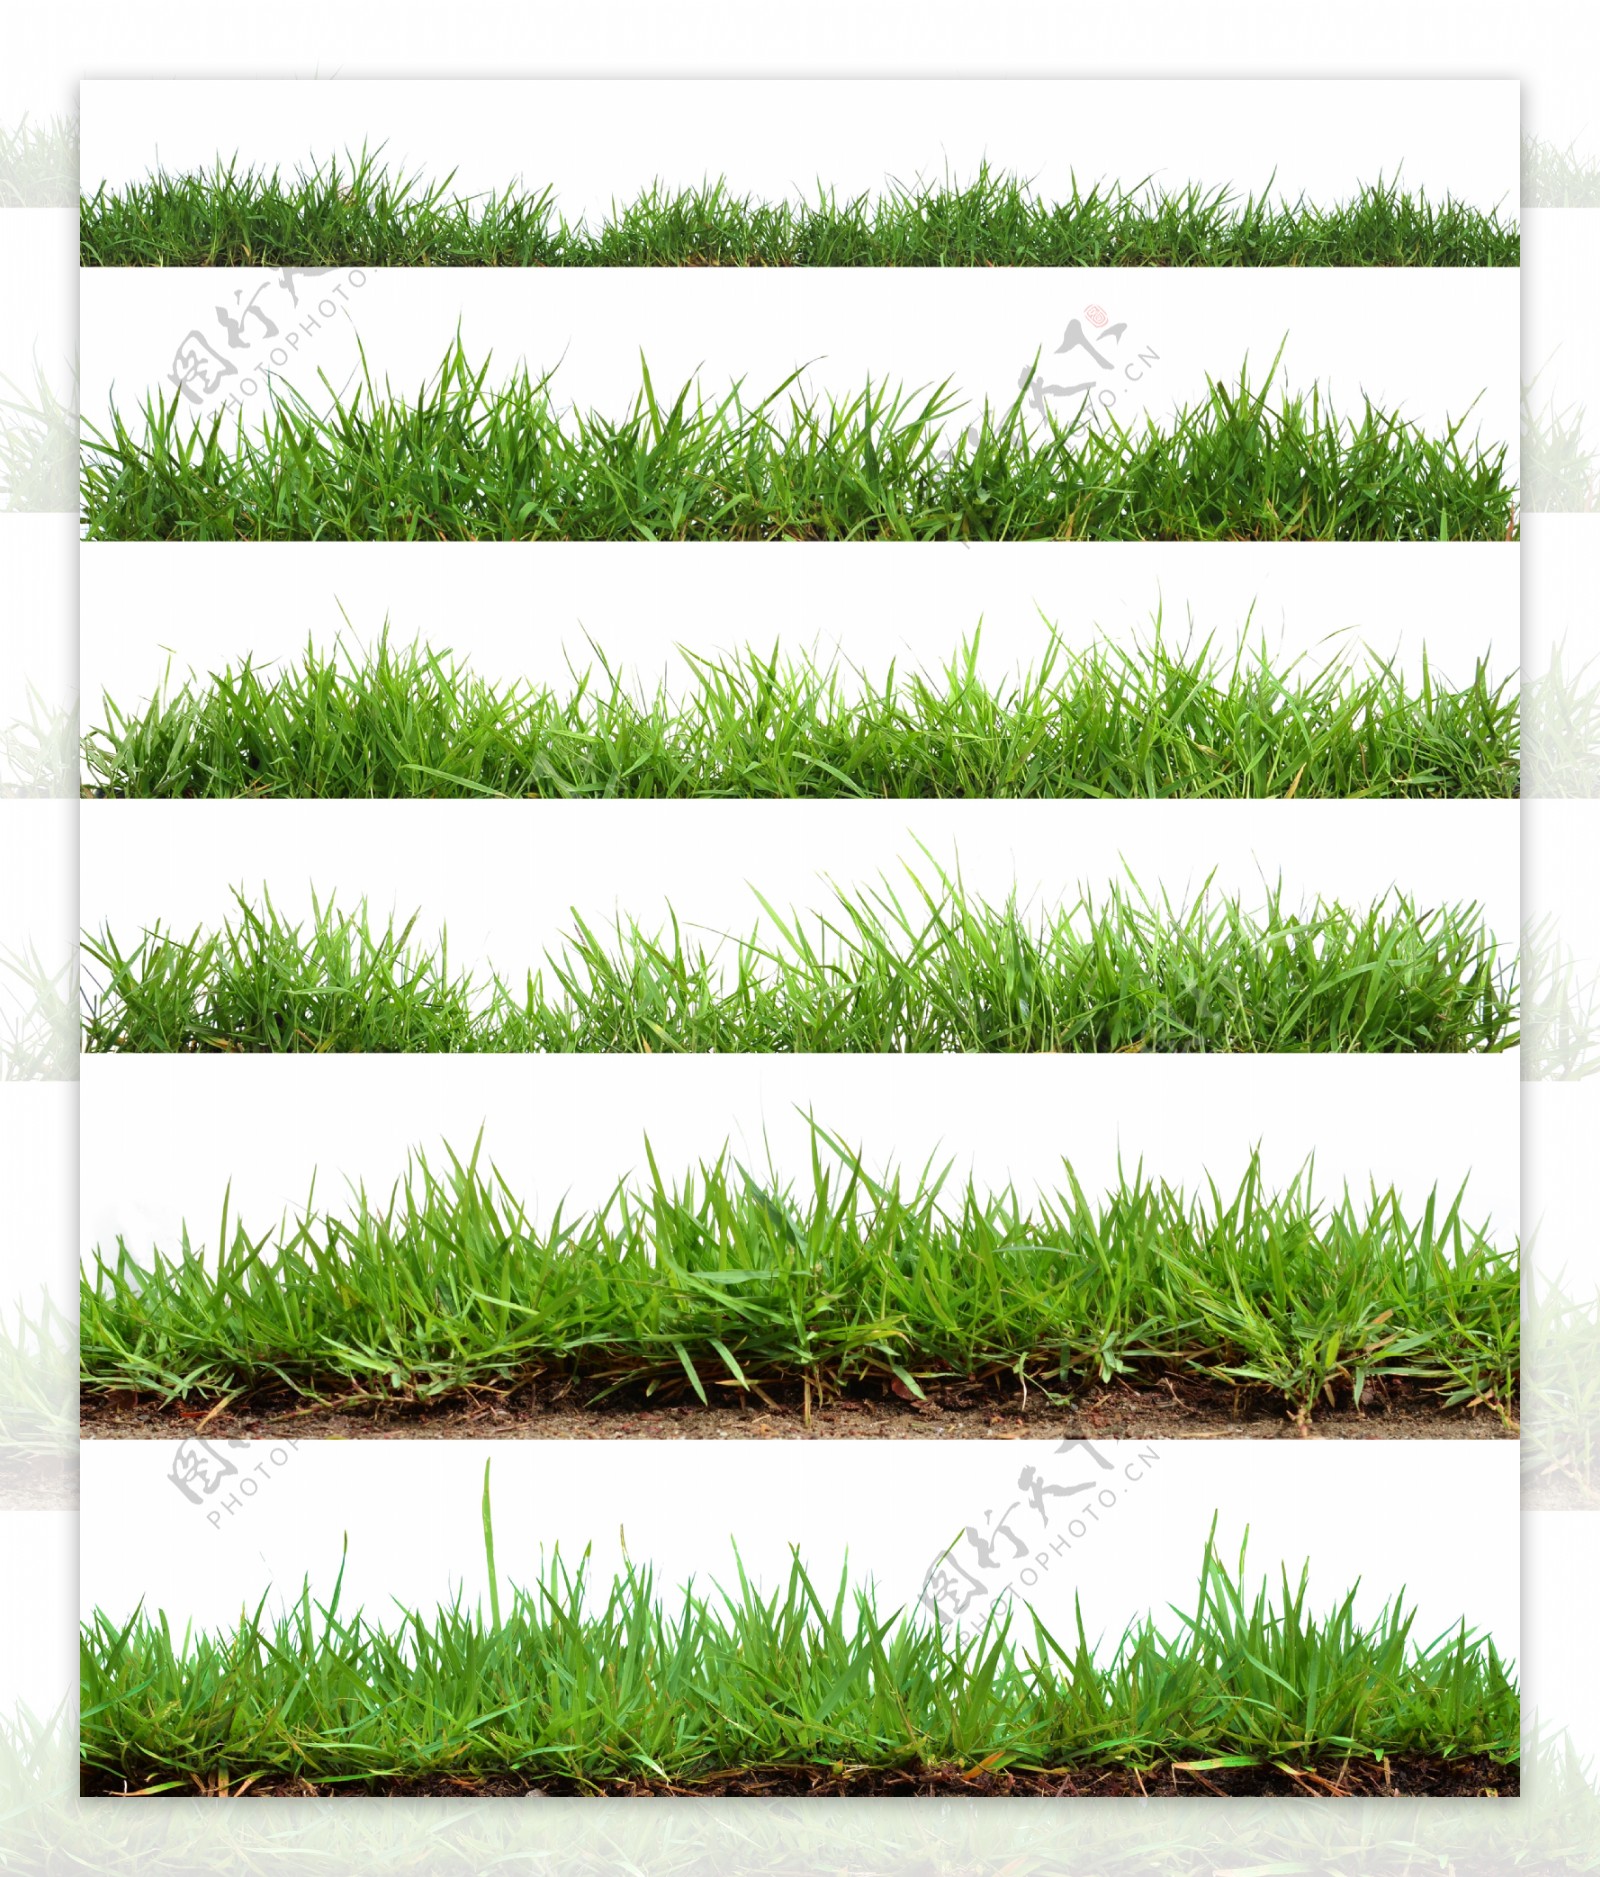 草坪草地绿色背景海报素材图片